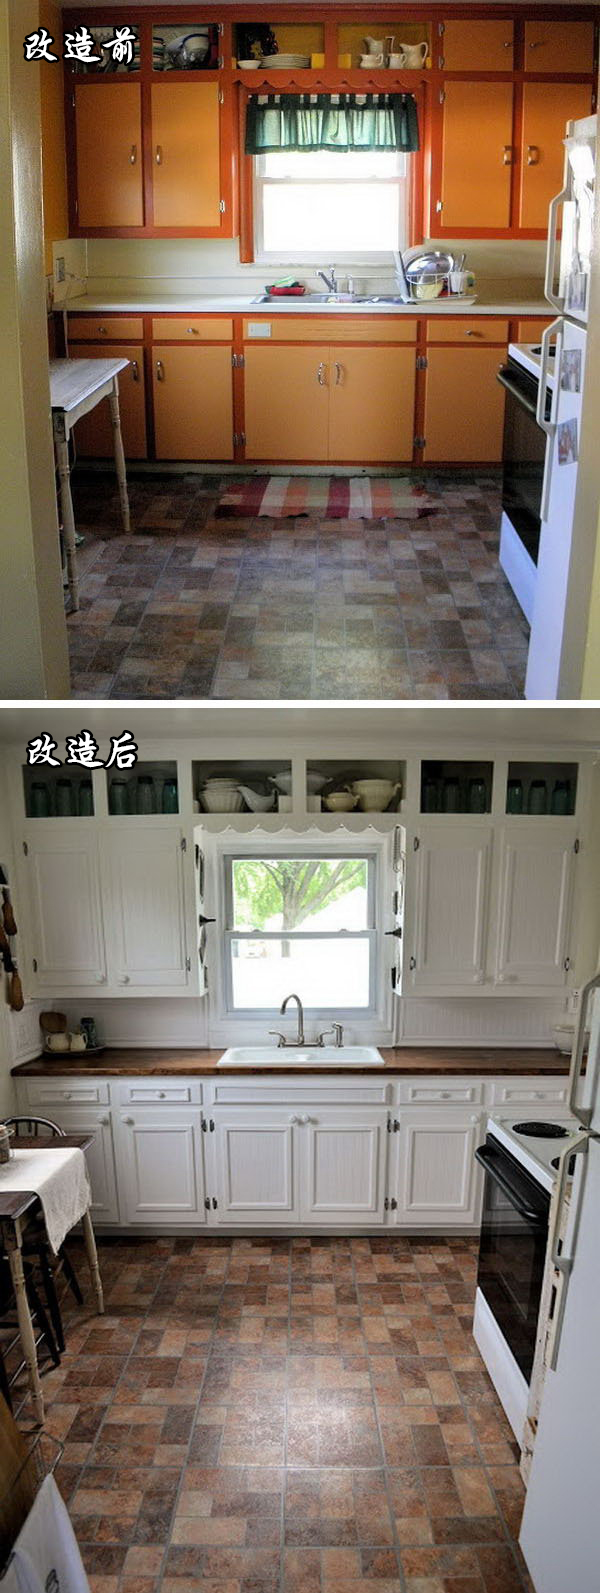 厨房收纳前后对比照片图片